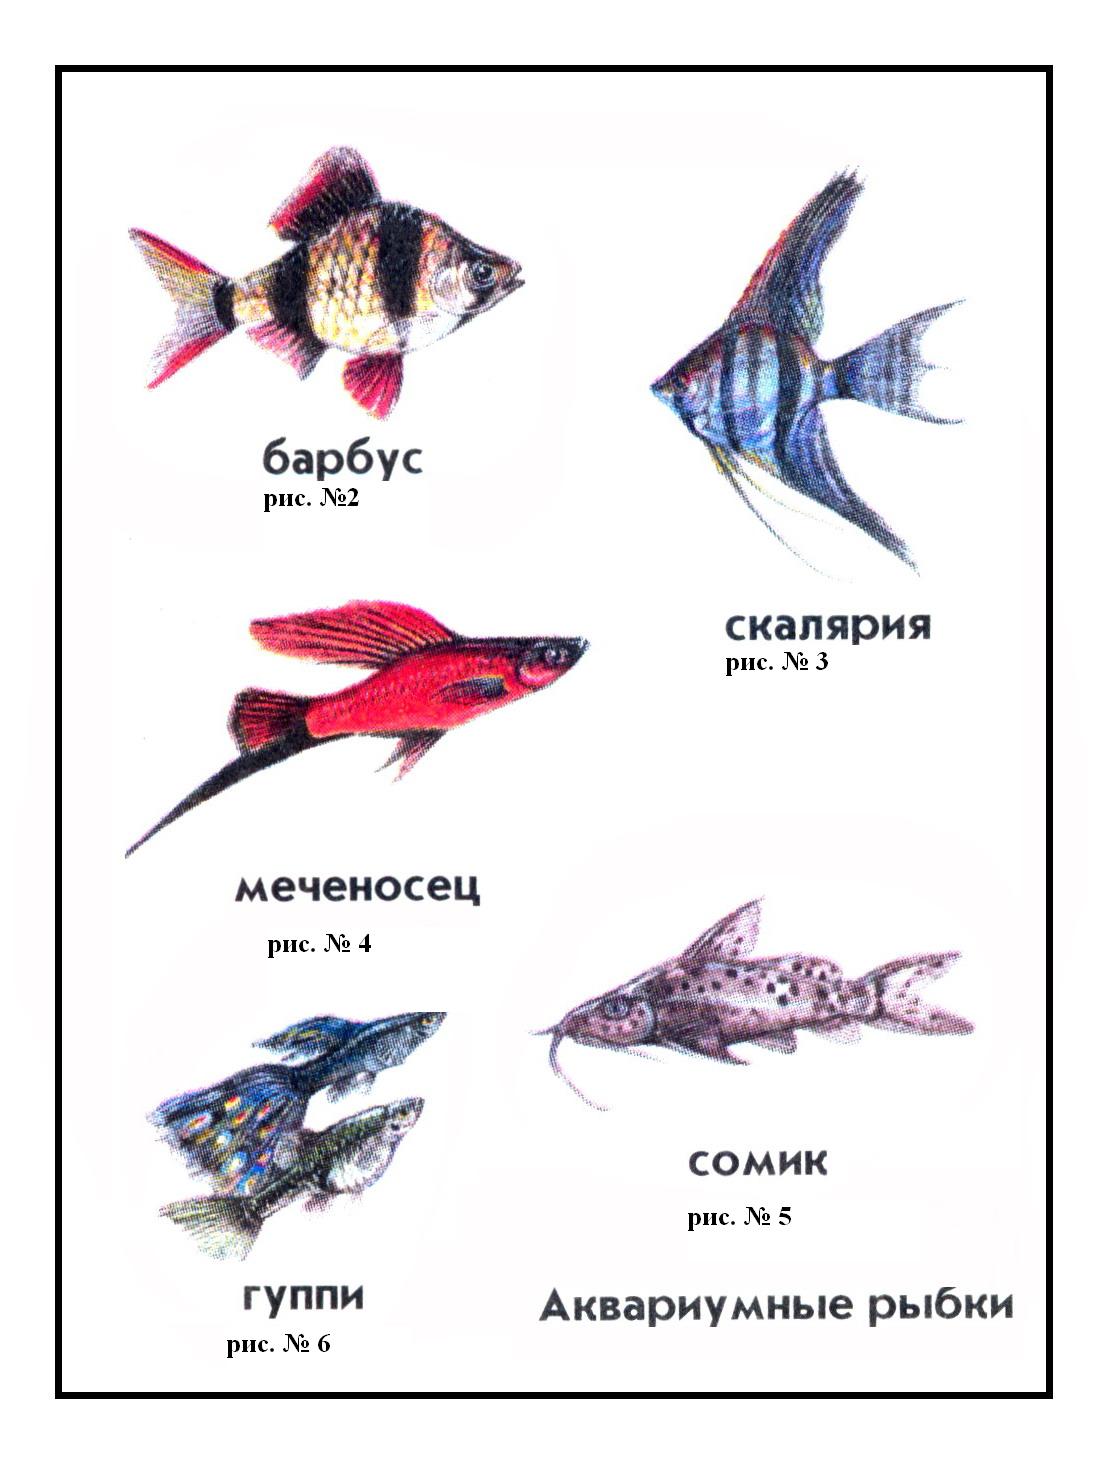 Аквариумные рыбки названия